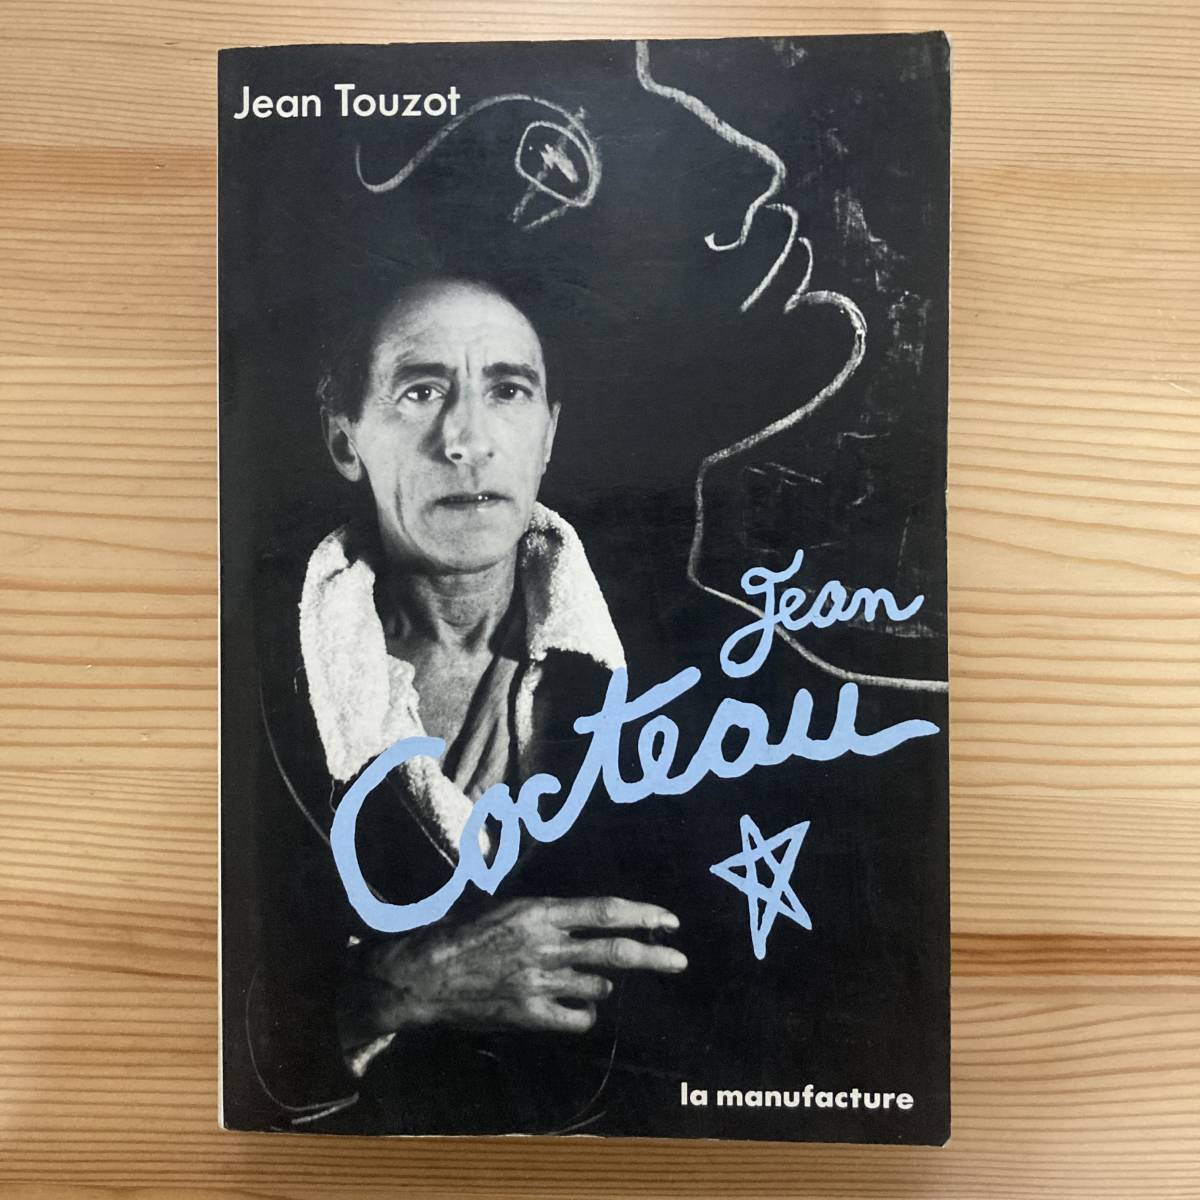 【仏語洋書】JEAN COCTEAU / Jean Touzot（著）【ジャン・コクトー】_画像1